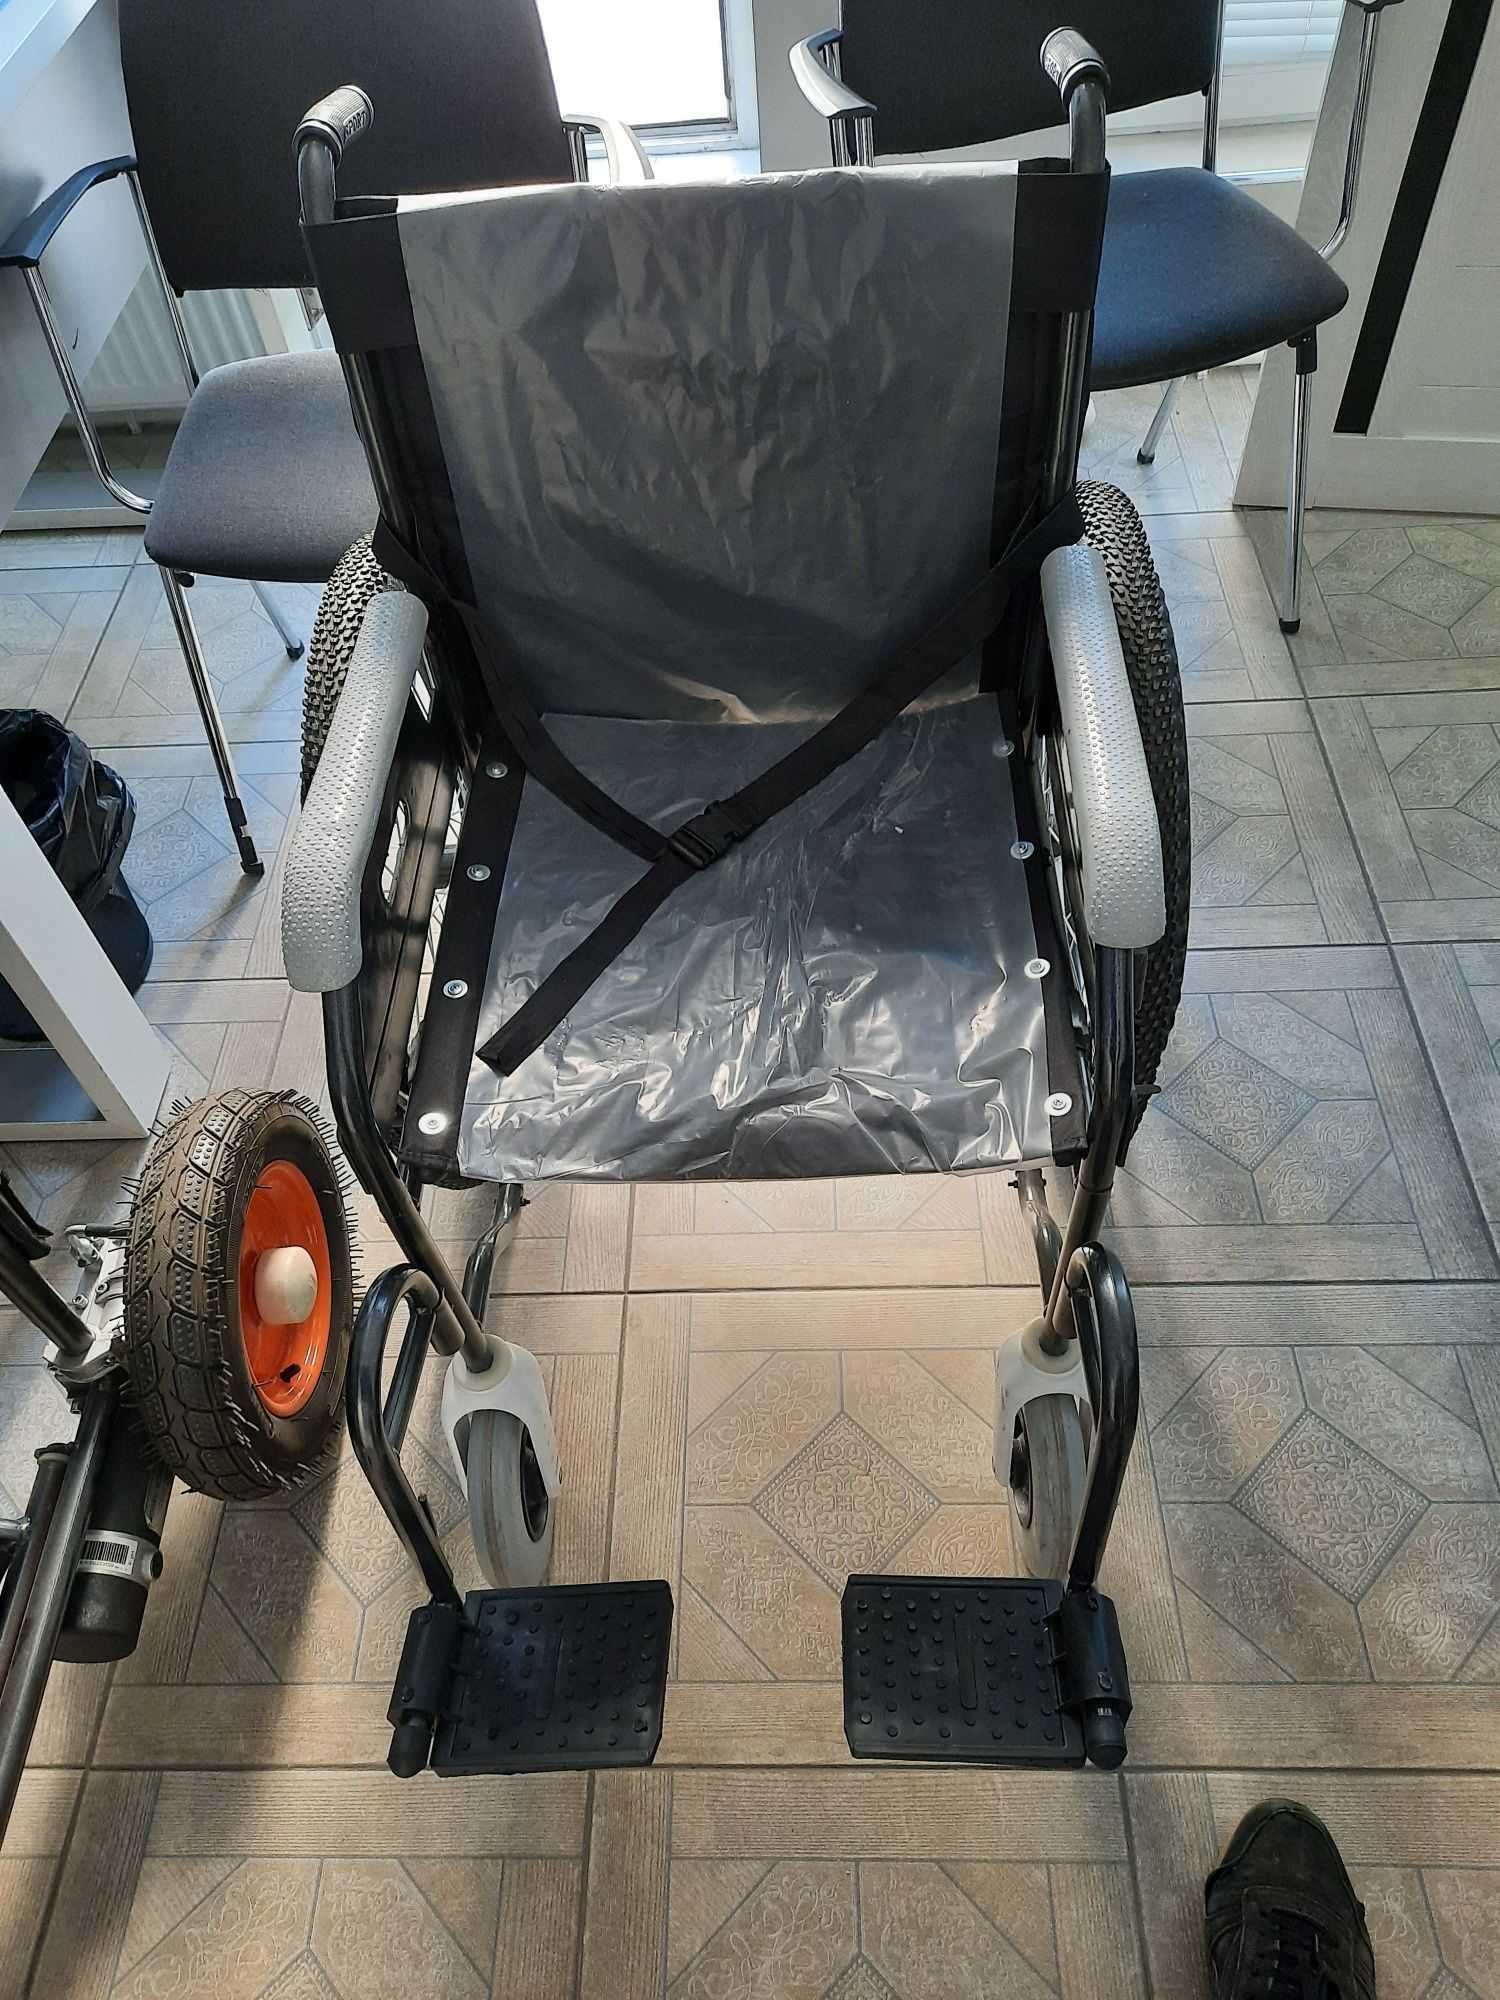 Инвалидная коляска. Ногиронлар аравачаси Nogironlar aravasi m111